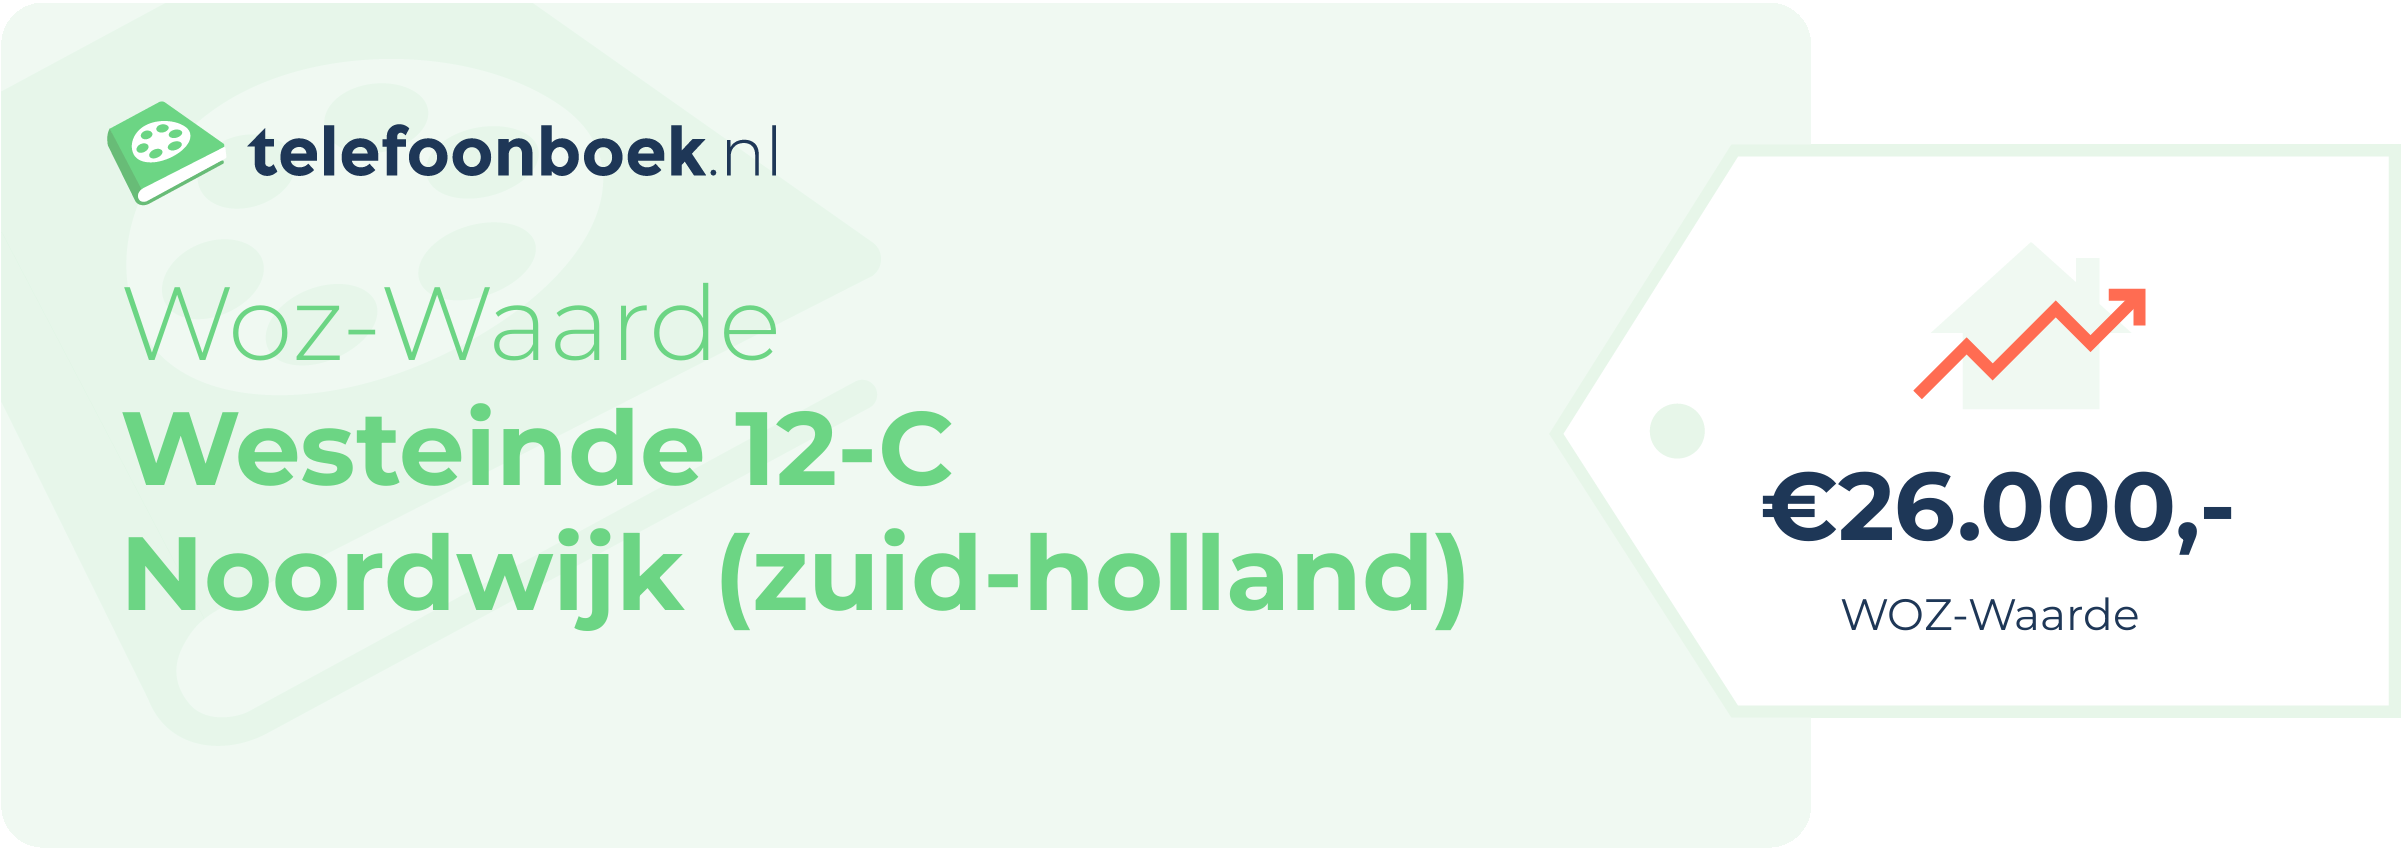 WOZ-waarde Westeinde 12-C Noordwijk (Zuid-Holland)